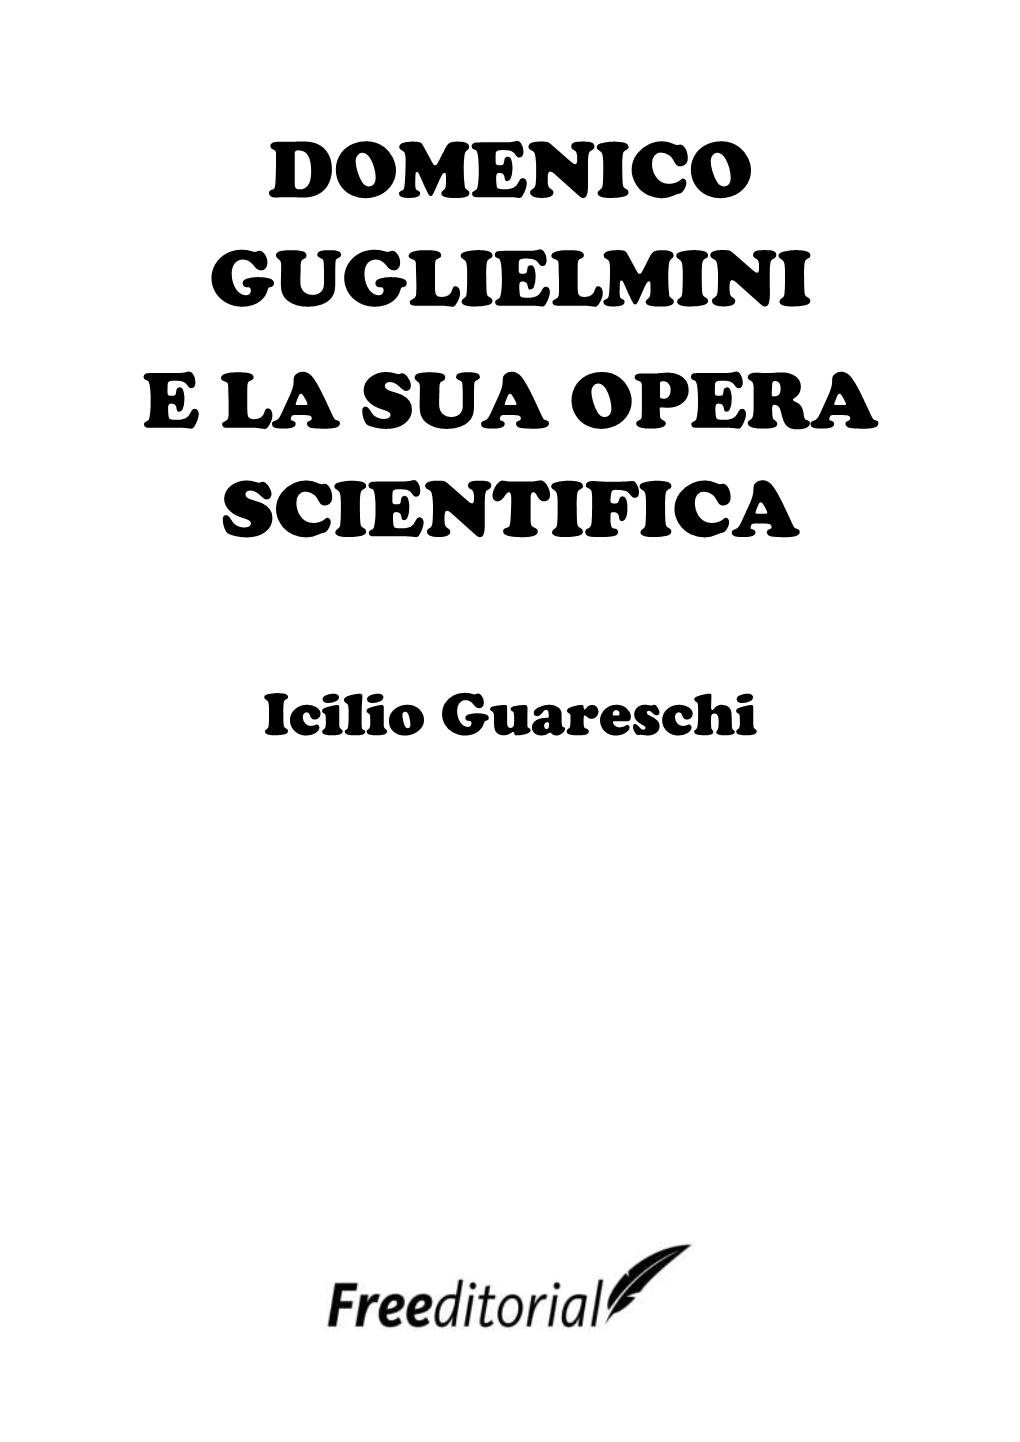 Domenico Guglielmini E La Sua Opera Scientifica